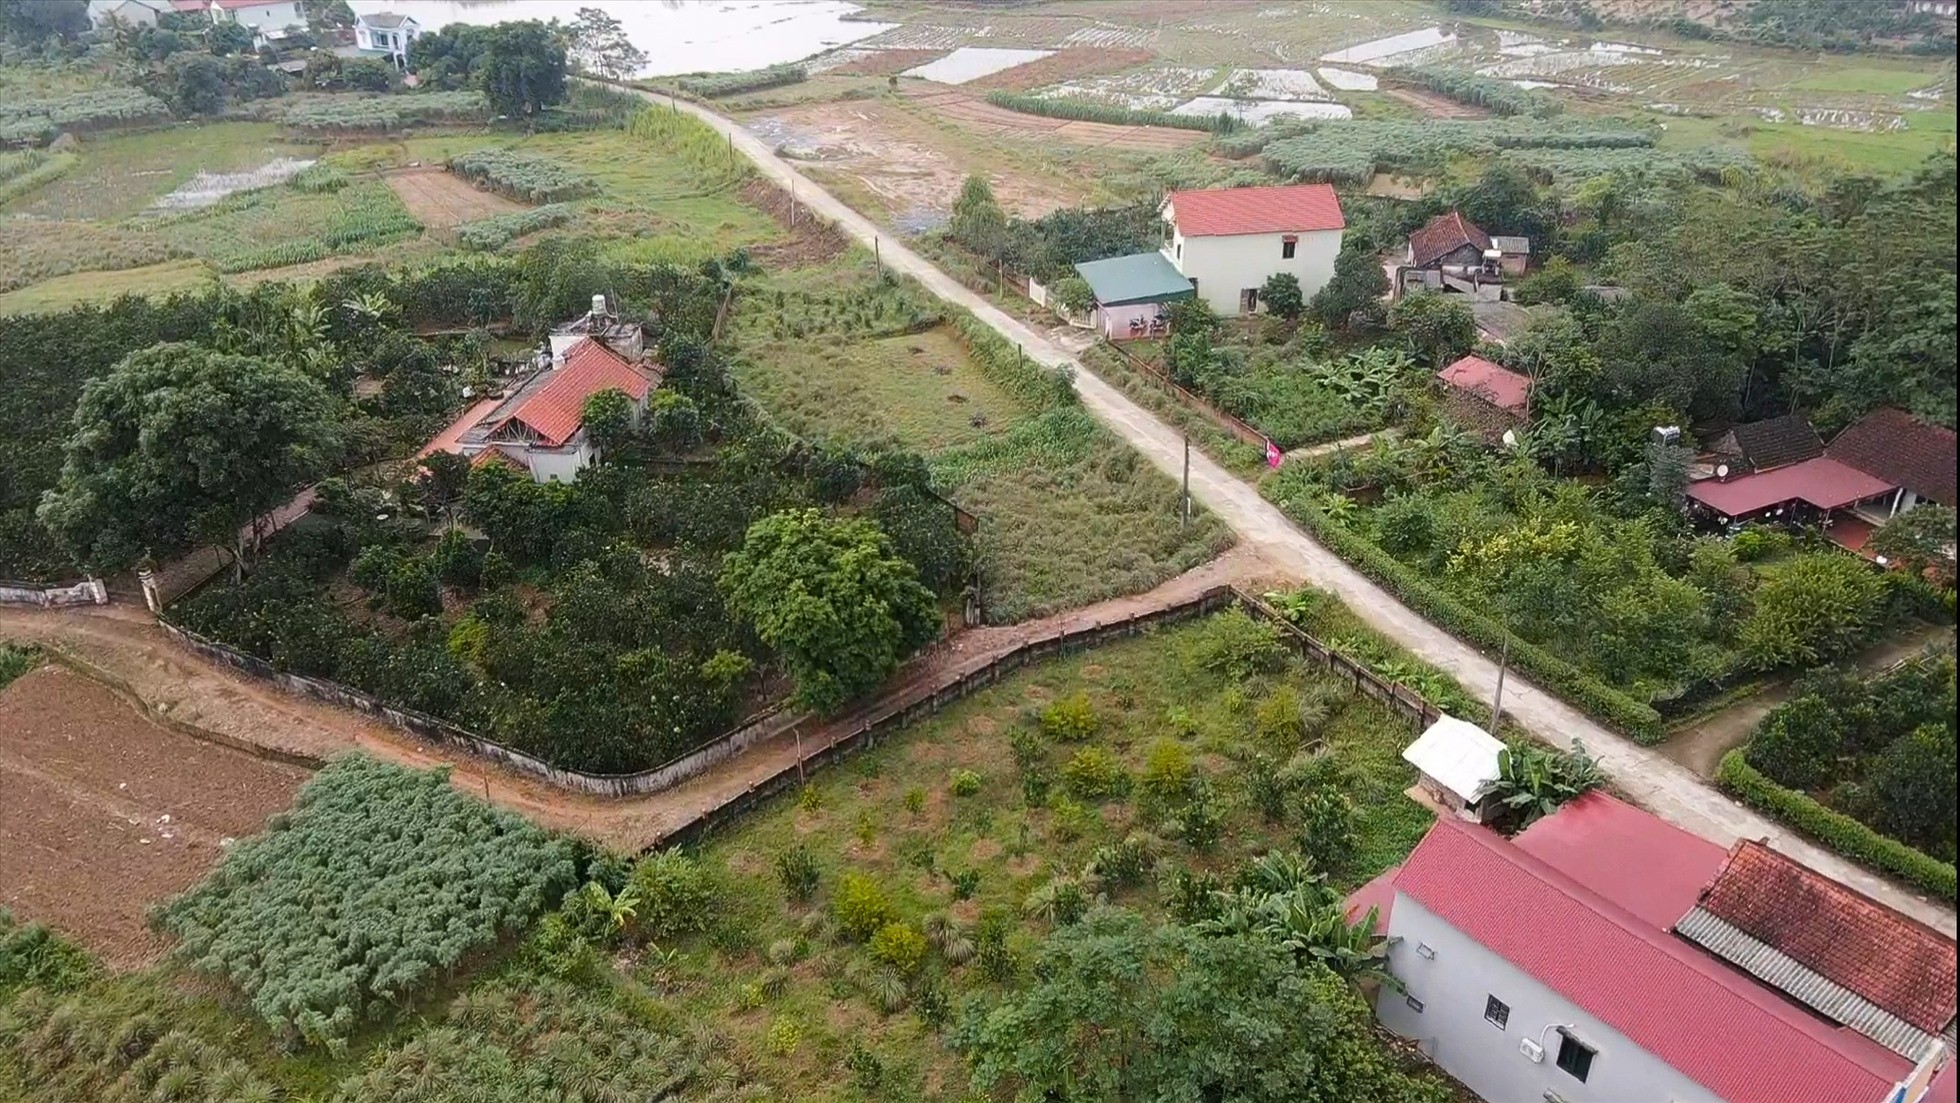 
Câu chuyện giá đất tăng cao xé nát các mối quan hệ gia đình ở làng quê dường như trở thành phổ biến, ngay cả vùng ven Hà Nội.
